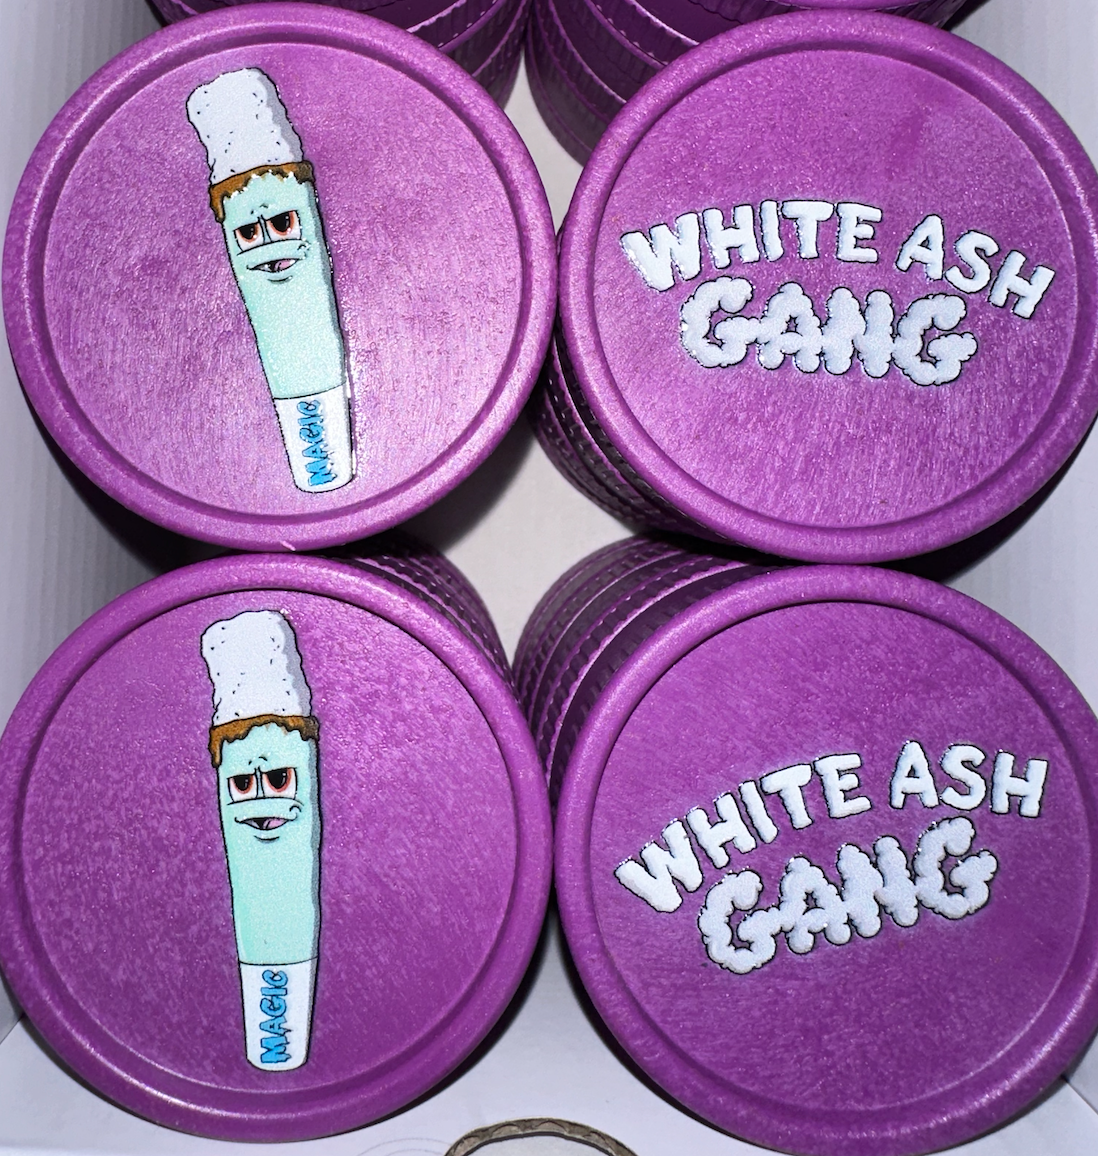 Magic King Purple Hemp Grinder - White Ash Gang